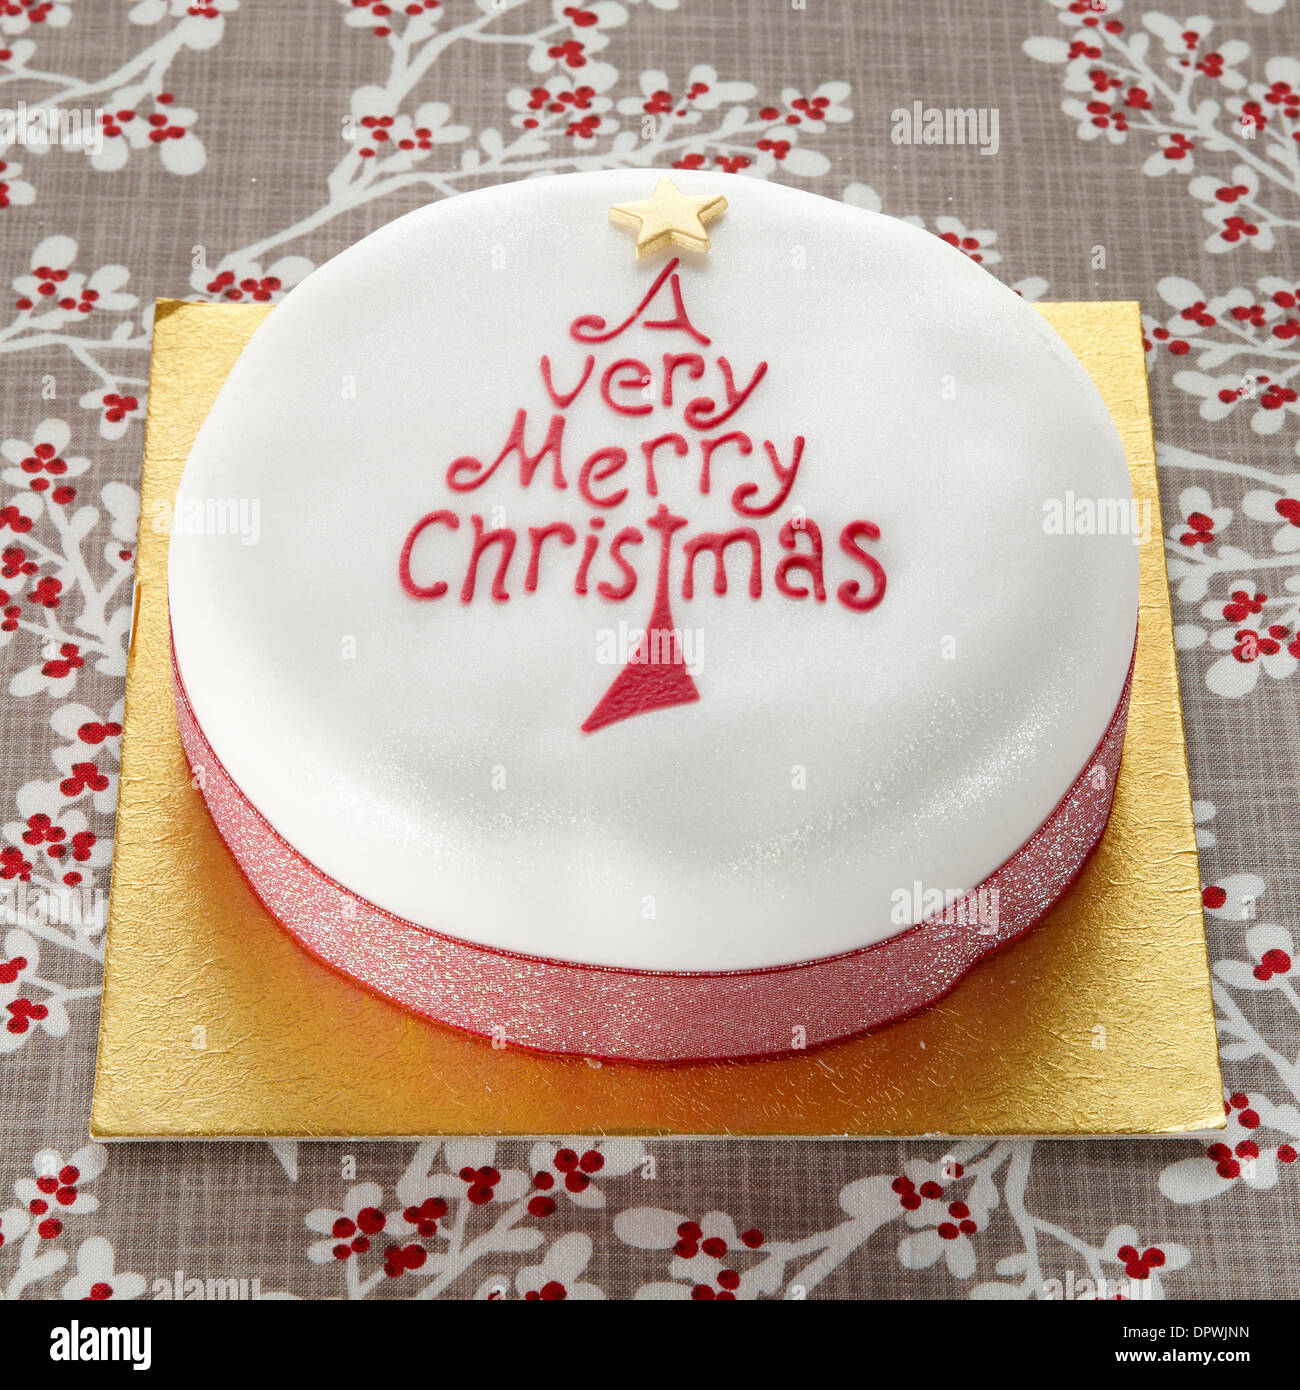 Un très joyeux Noël cake Banque D'Images